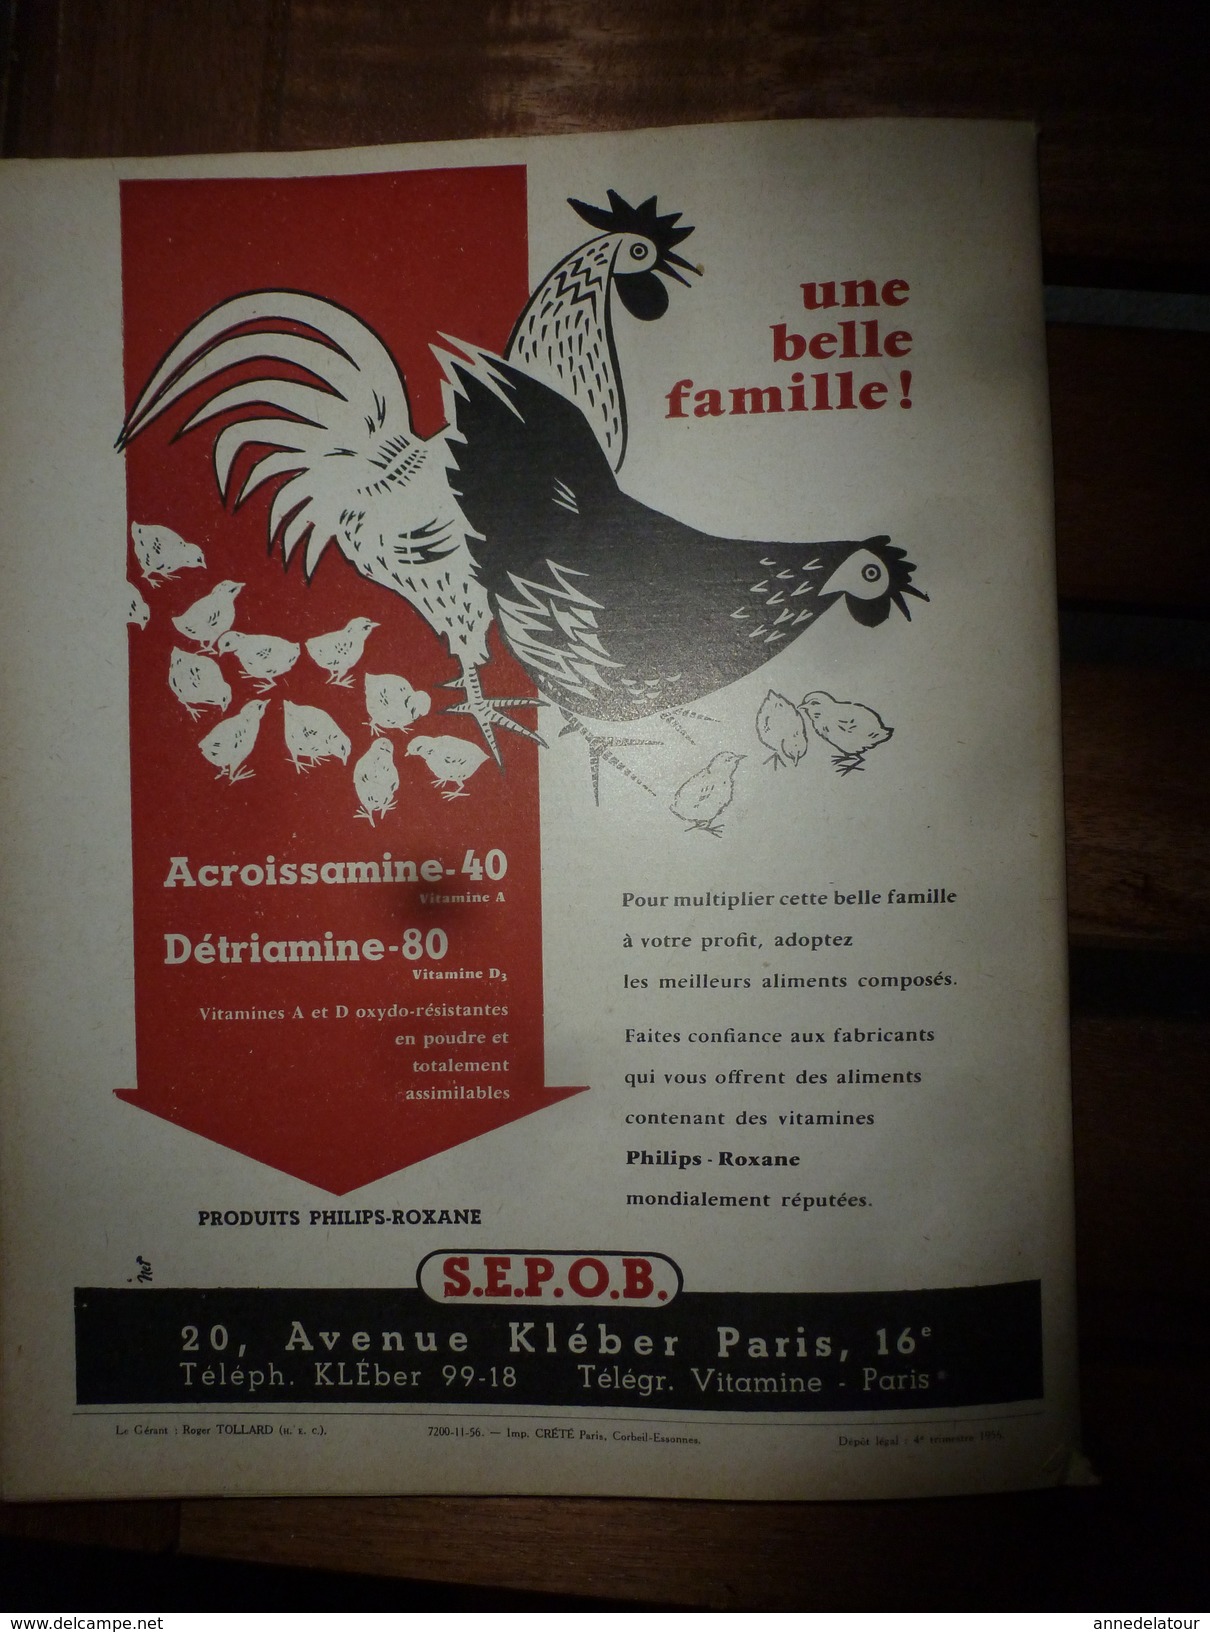 1956 LRDLE  : Les prairies; Angleterre;Les oeufs; Concours races;Système USA; Animaux à fourrure;Aviculture en Belgique